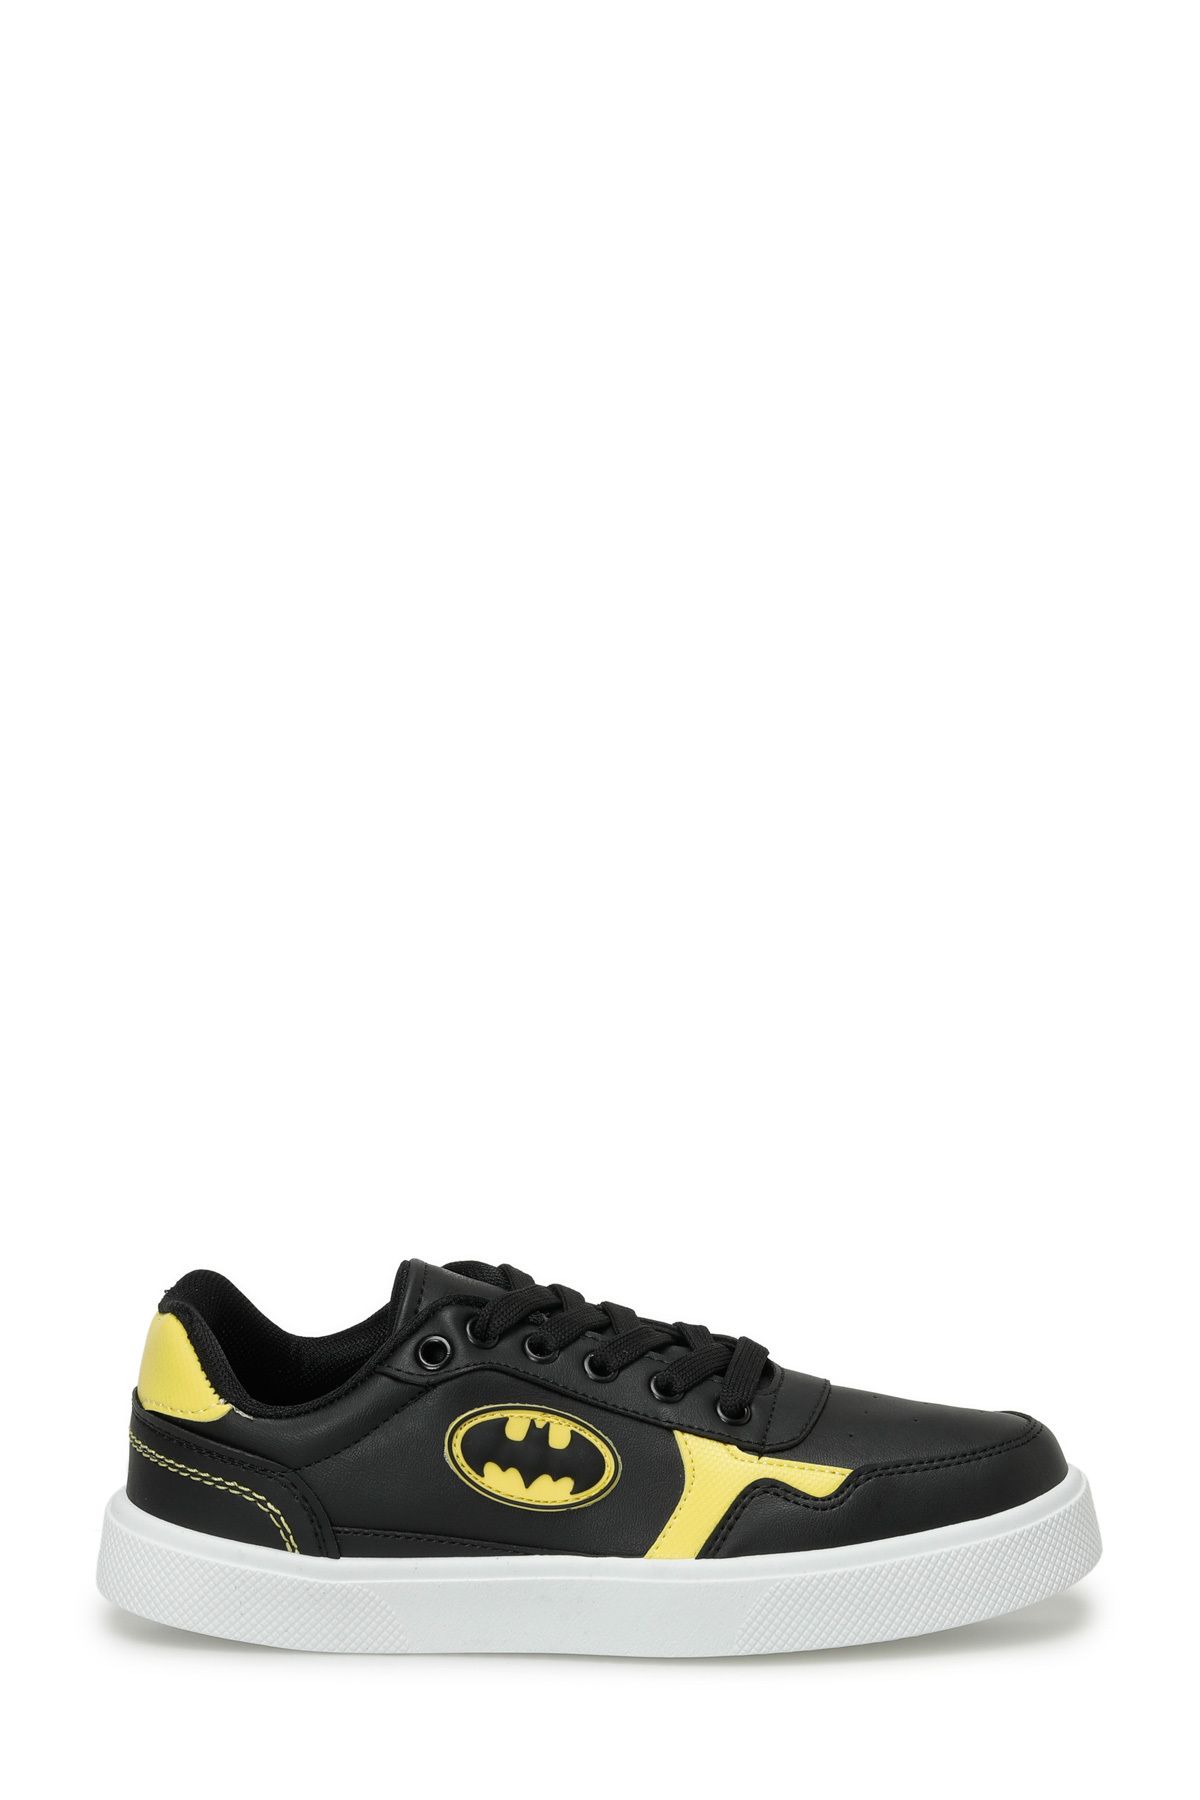 Batman VITA.G4FX Siyah Erkek Çocuk Sneaker